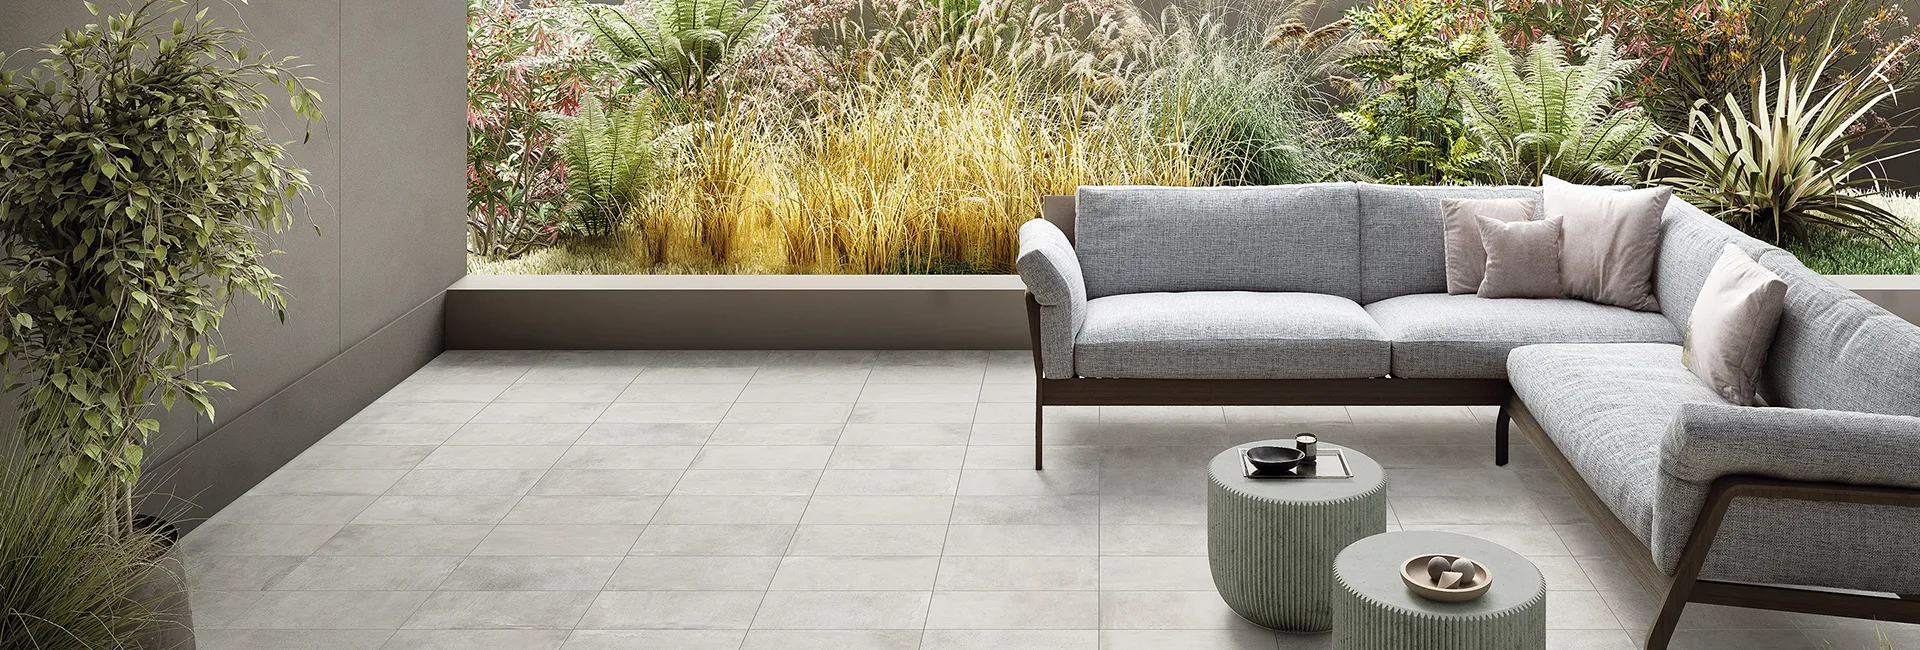 Pavimento in gres effetto cemento collezione Street colore Milano Silver in terrazza con divano e giardino.